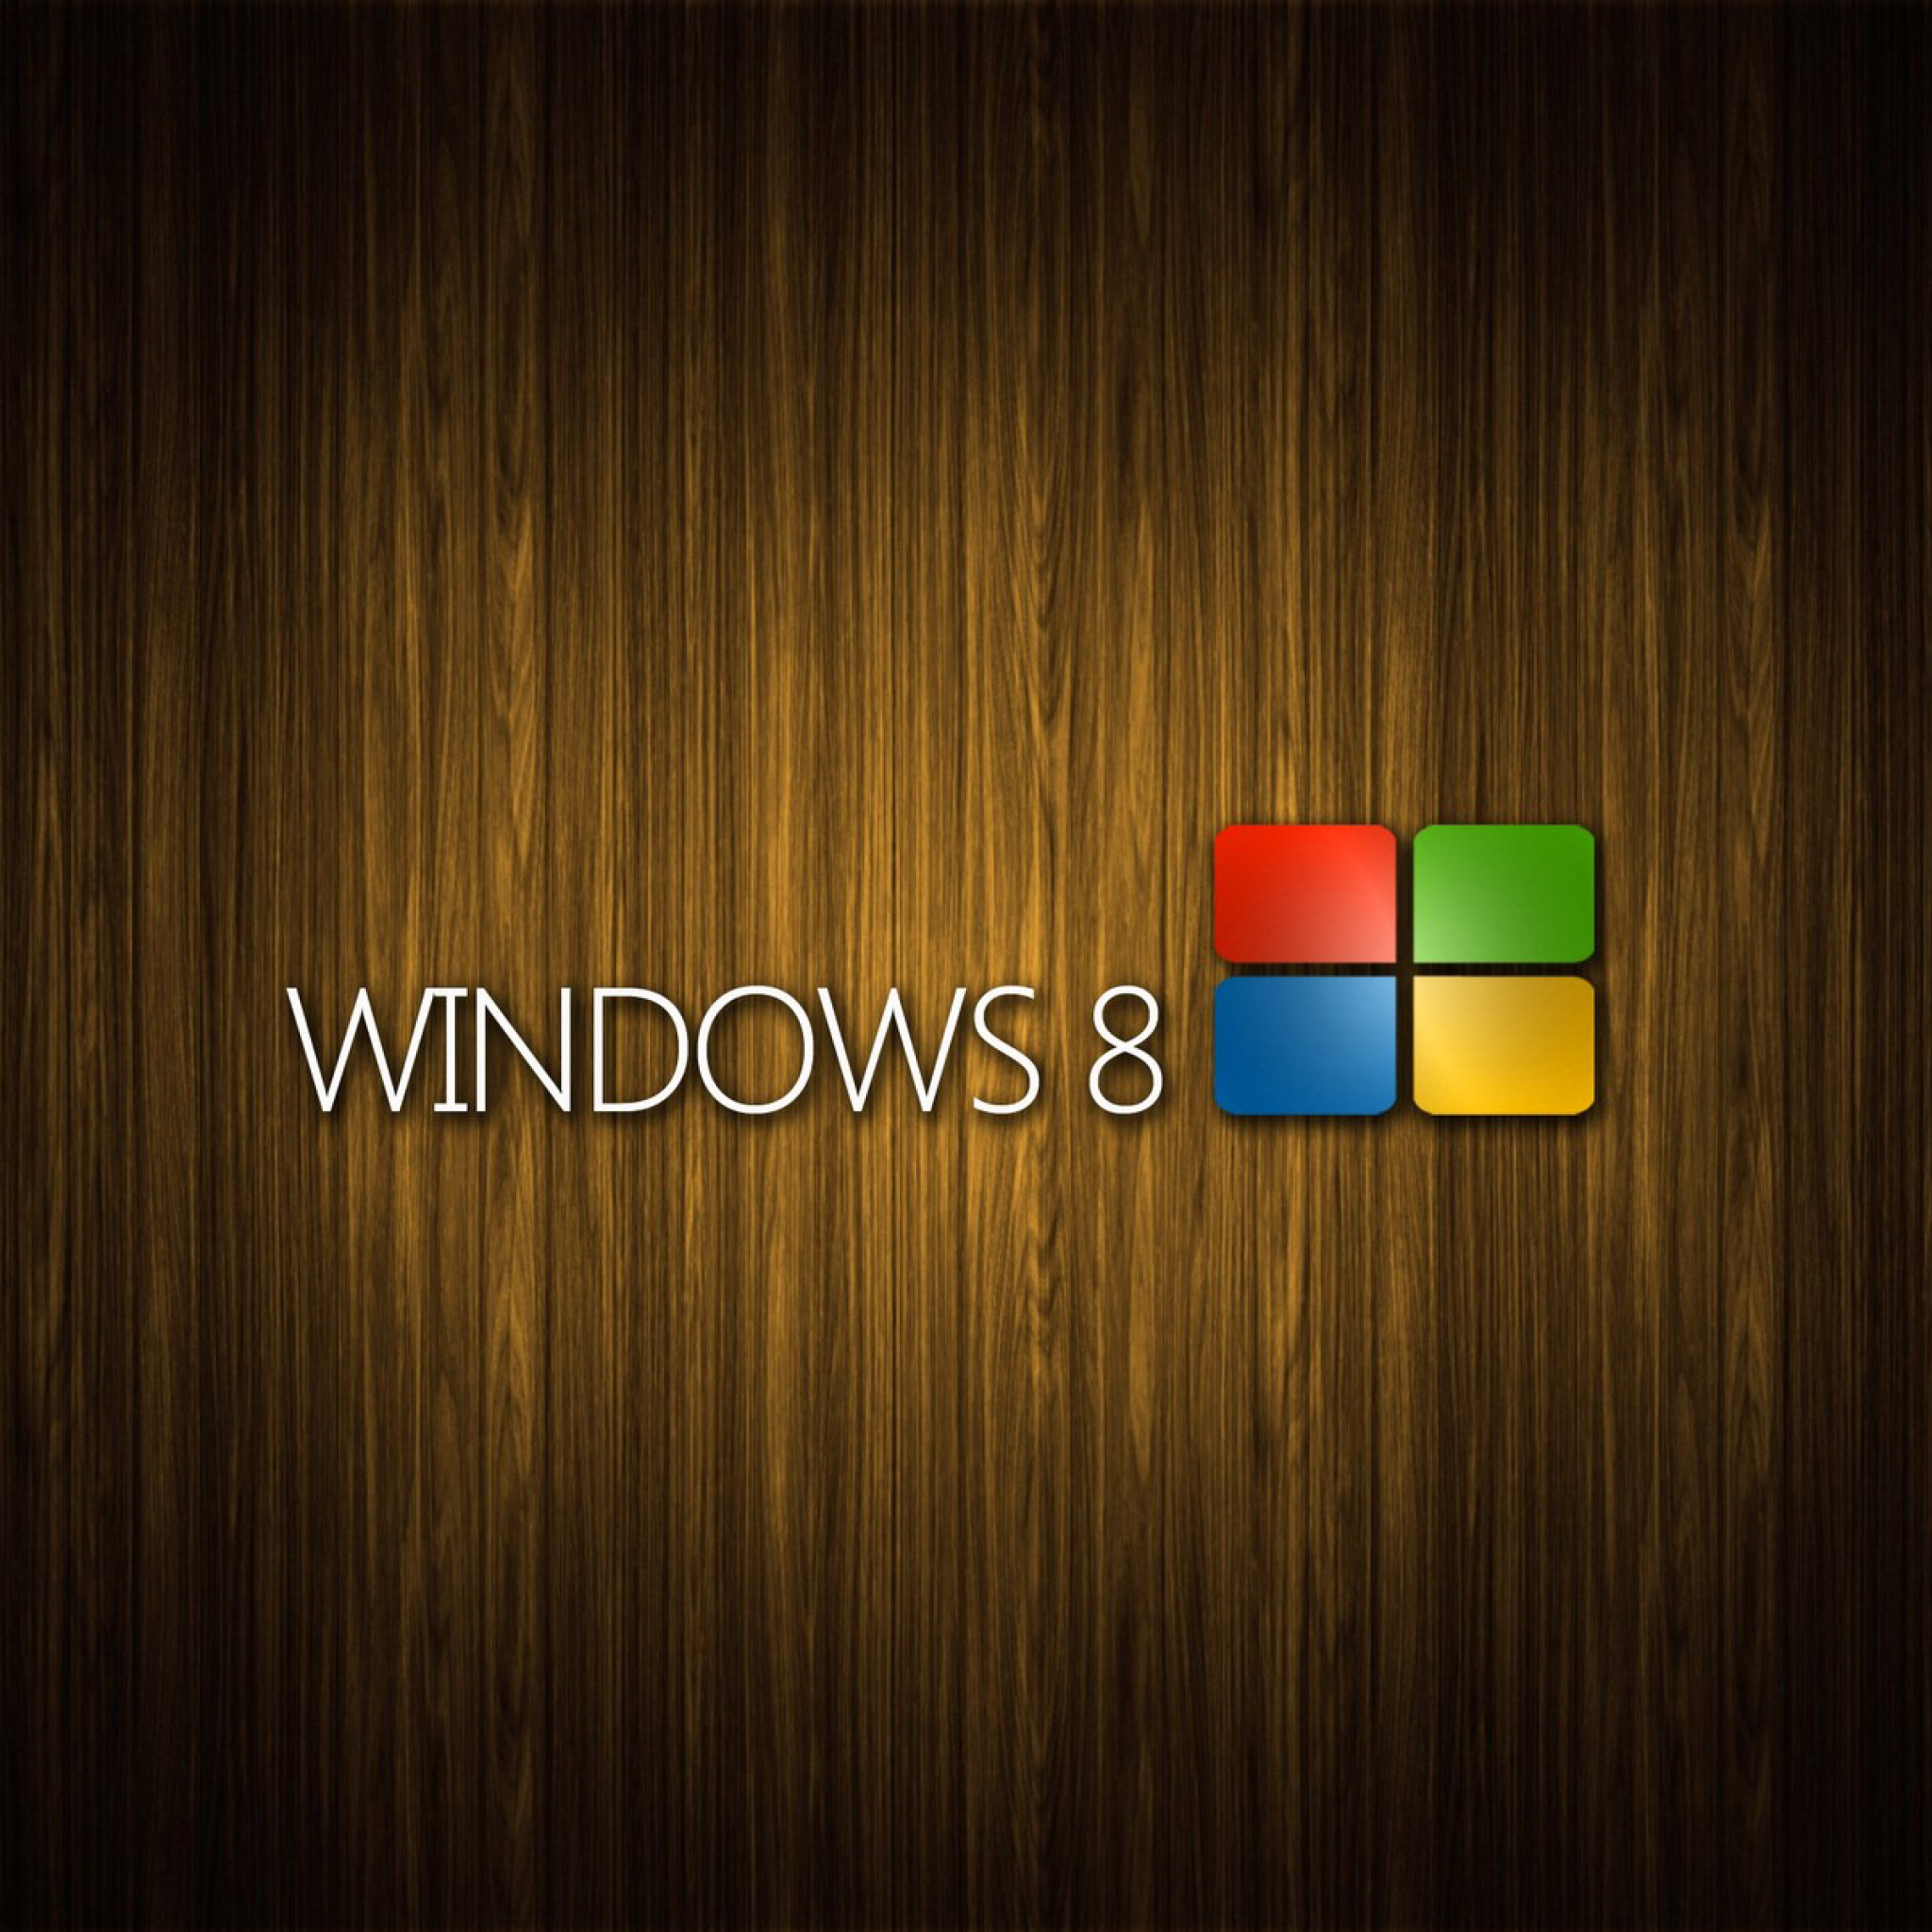 Windows 8 Wooden Emblem wallpaper 2048x2048